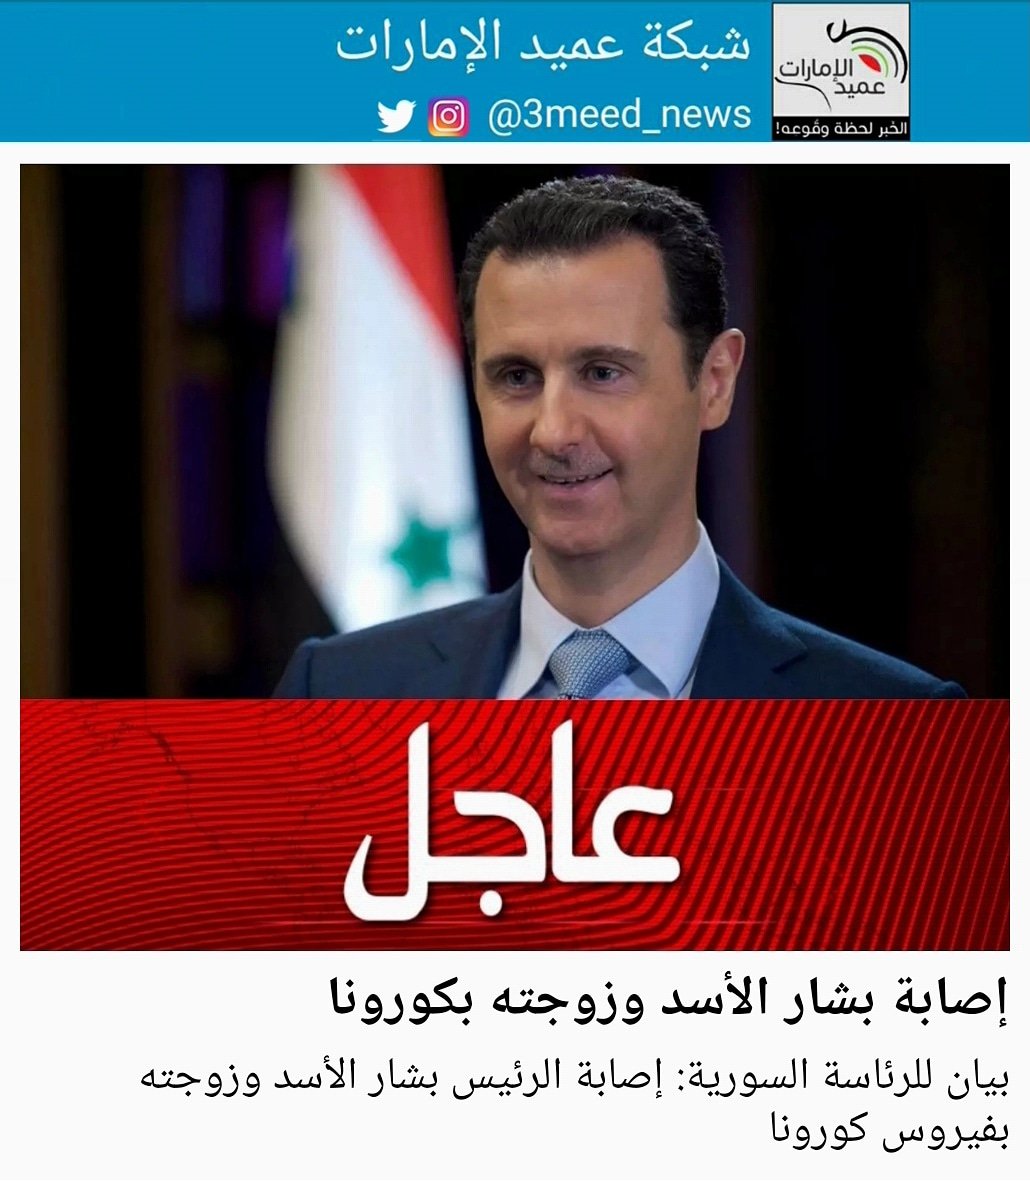 شبكة عميد الإمارات on Twitter: "بيان للرئاسة السورية: إصابة الرئيس بشار الأسد وزوجته بفيروس كورونا #عميد_الامارات #عاجل… "